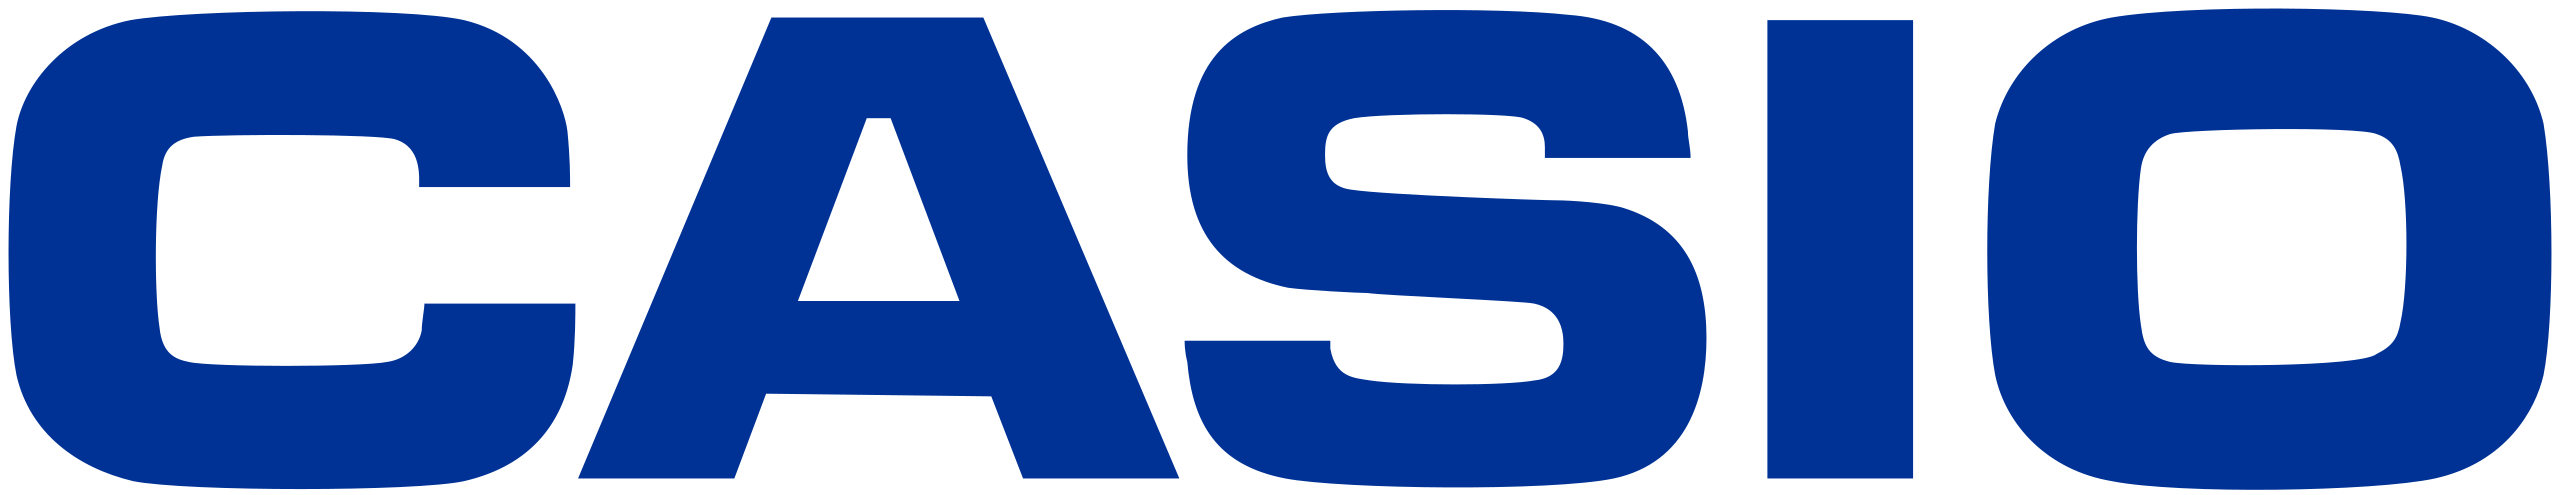 2560px-Casio_logo.svg